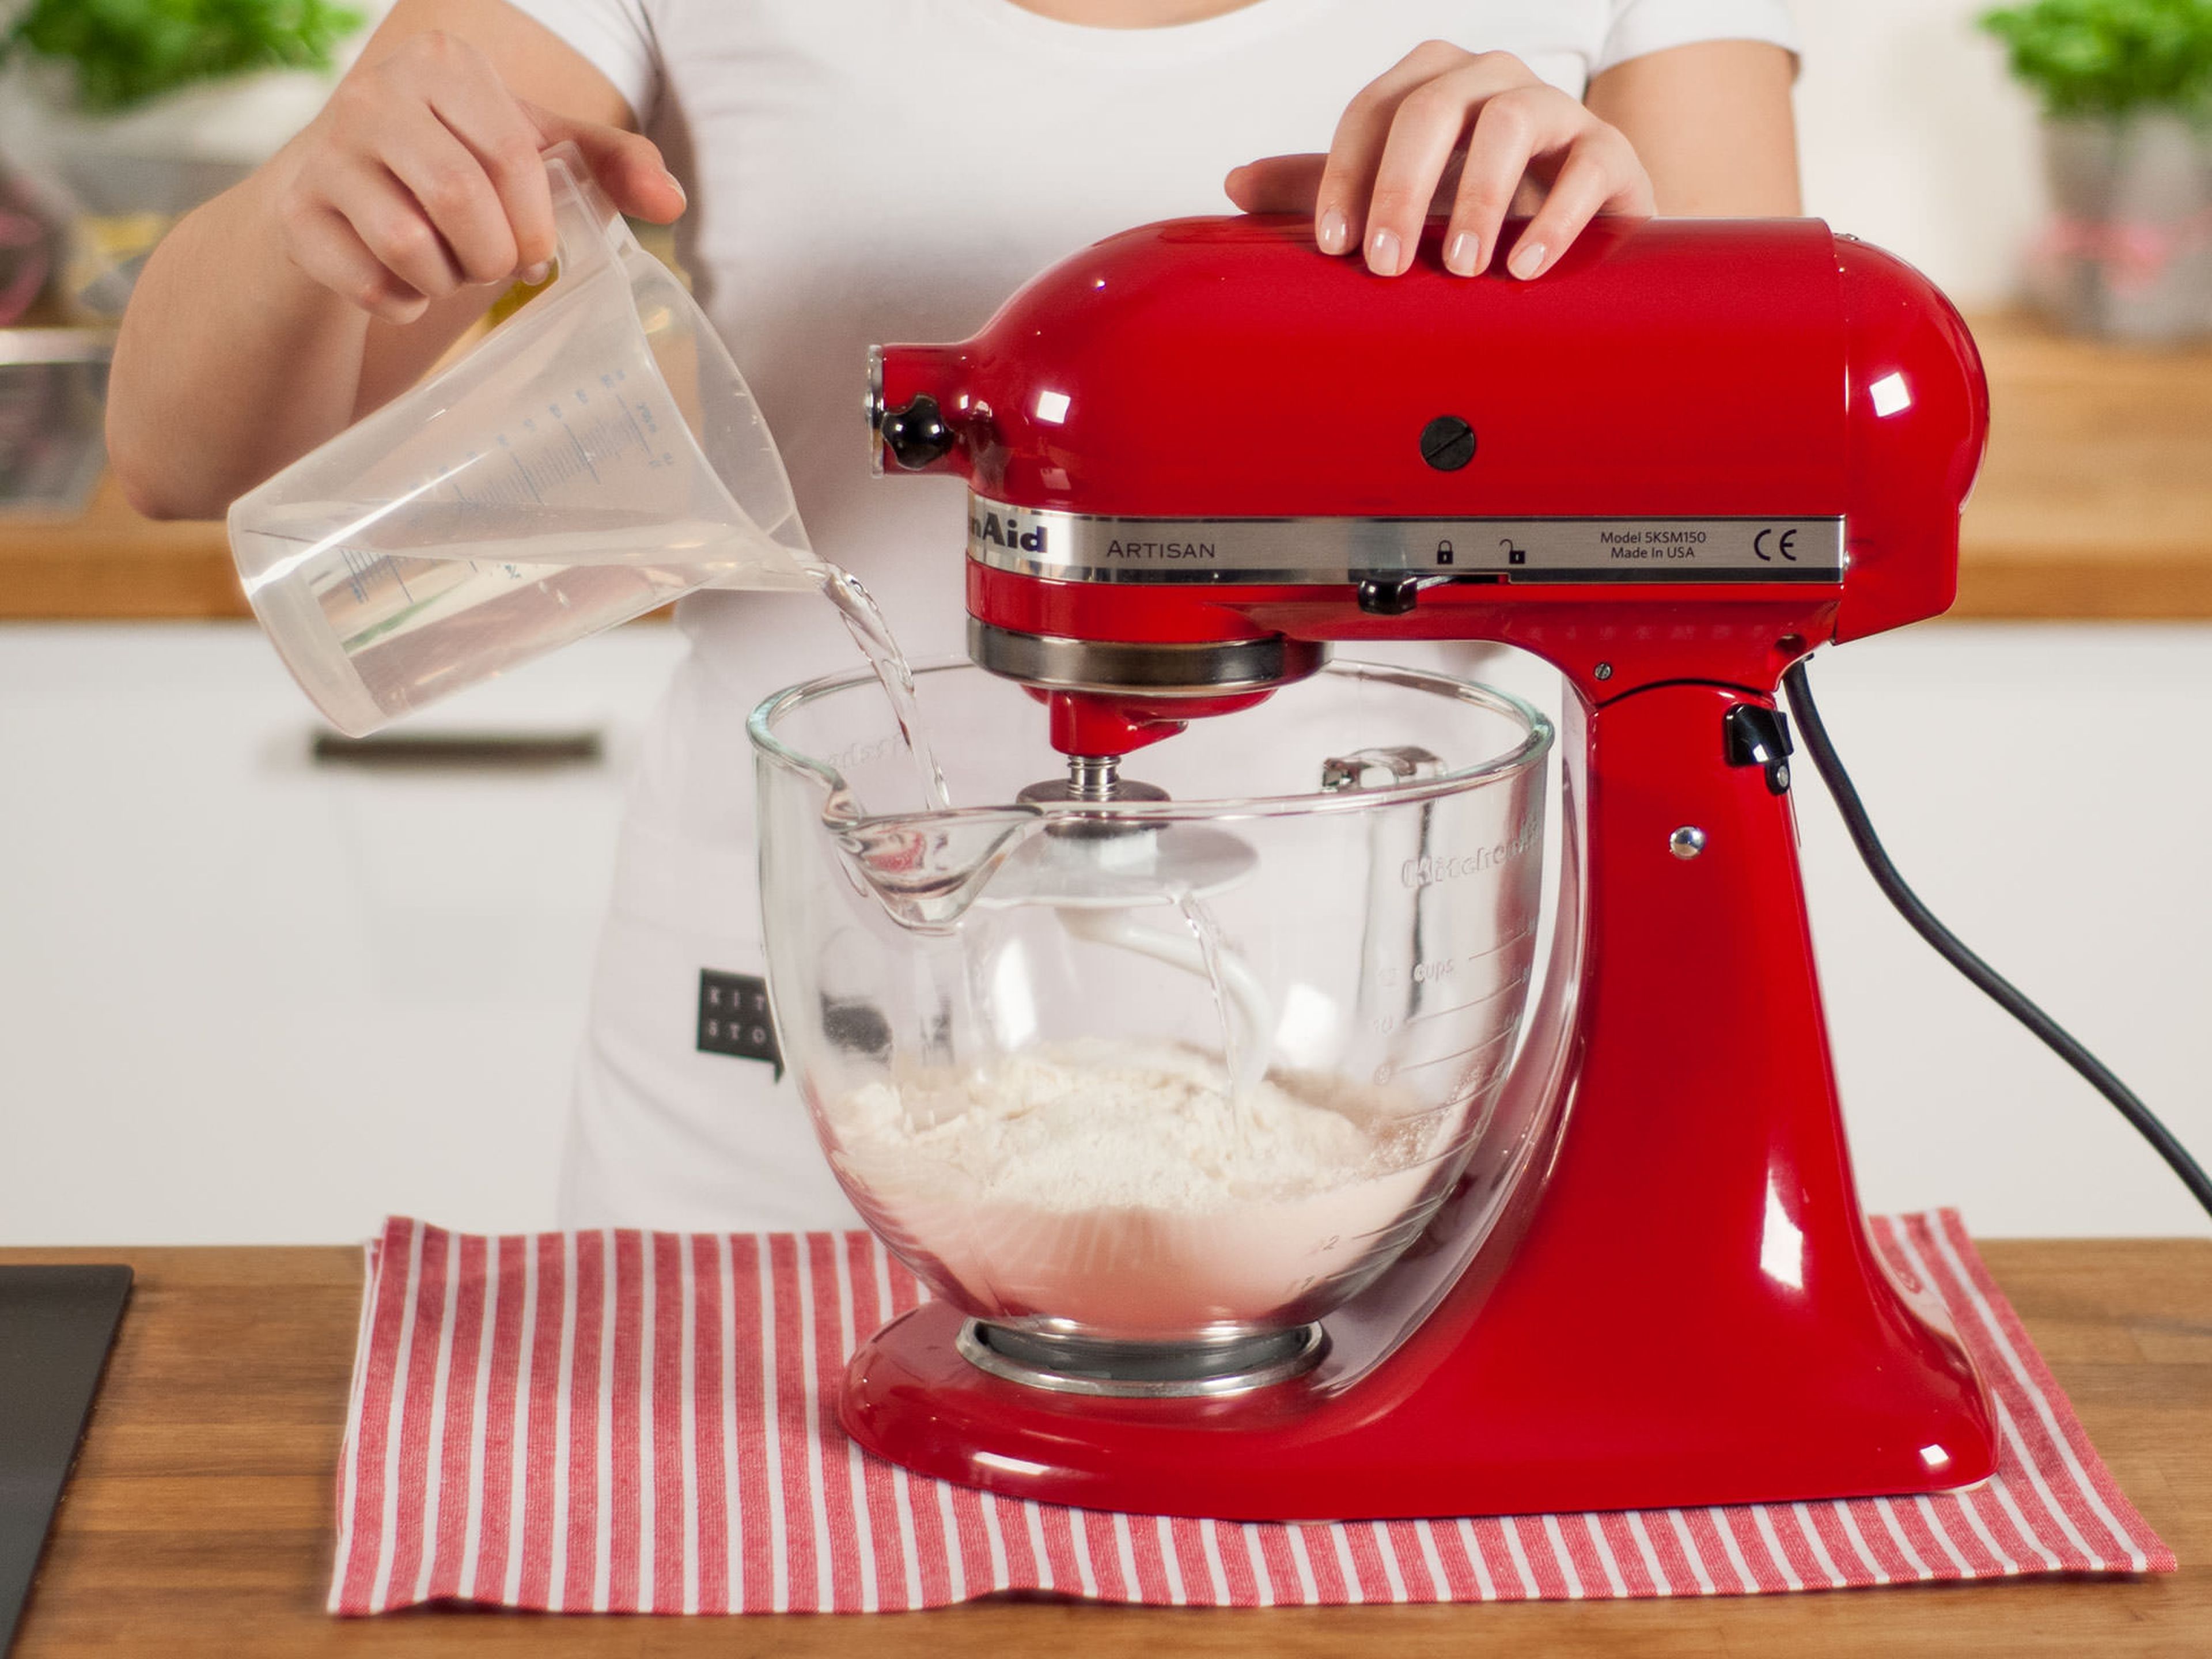 Mehl in die Küchenmaschine geben. Mit einem Teil des Wassers und einer Prise Salz ca. 5 - 7 Min. mischen und kneten, bis sich ein glatter Teig bildet.